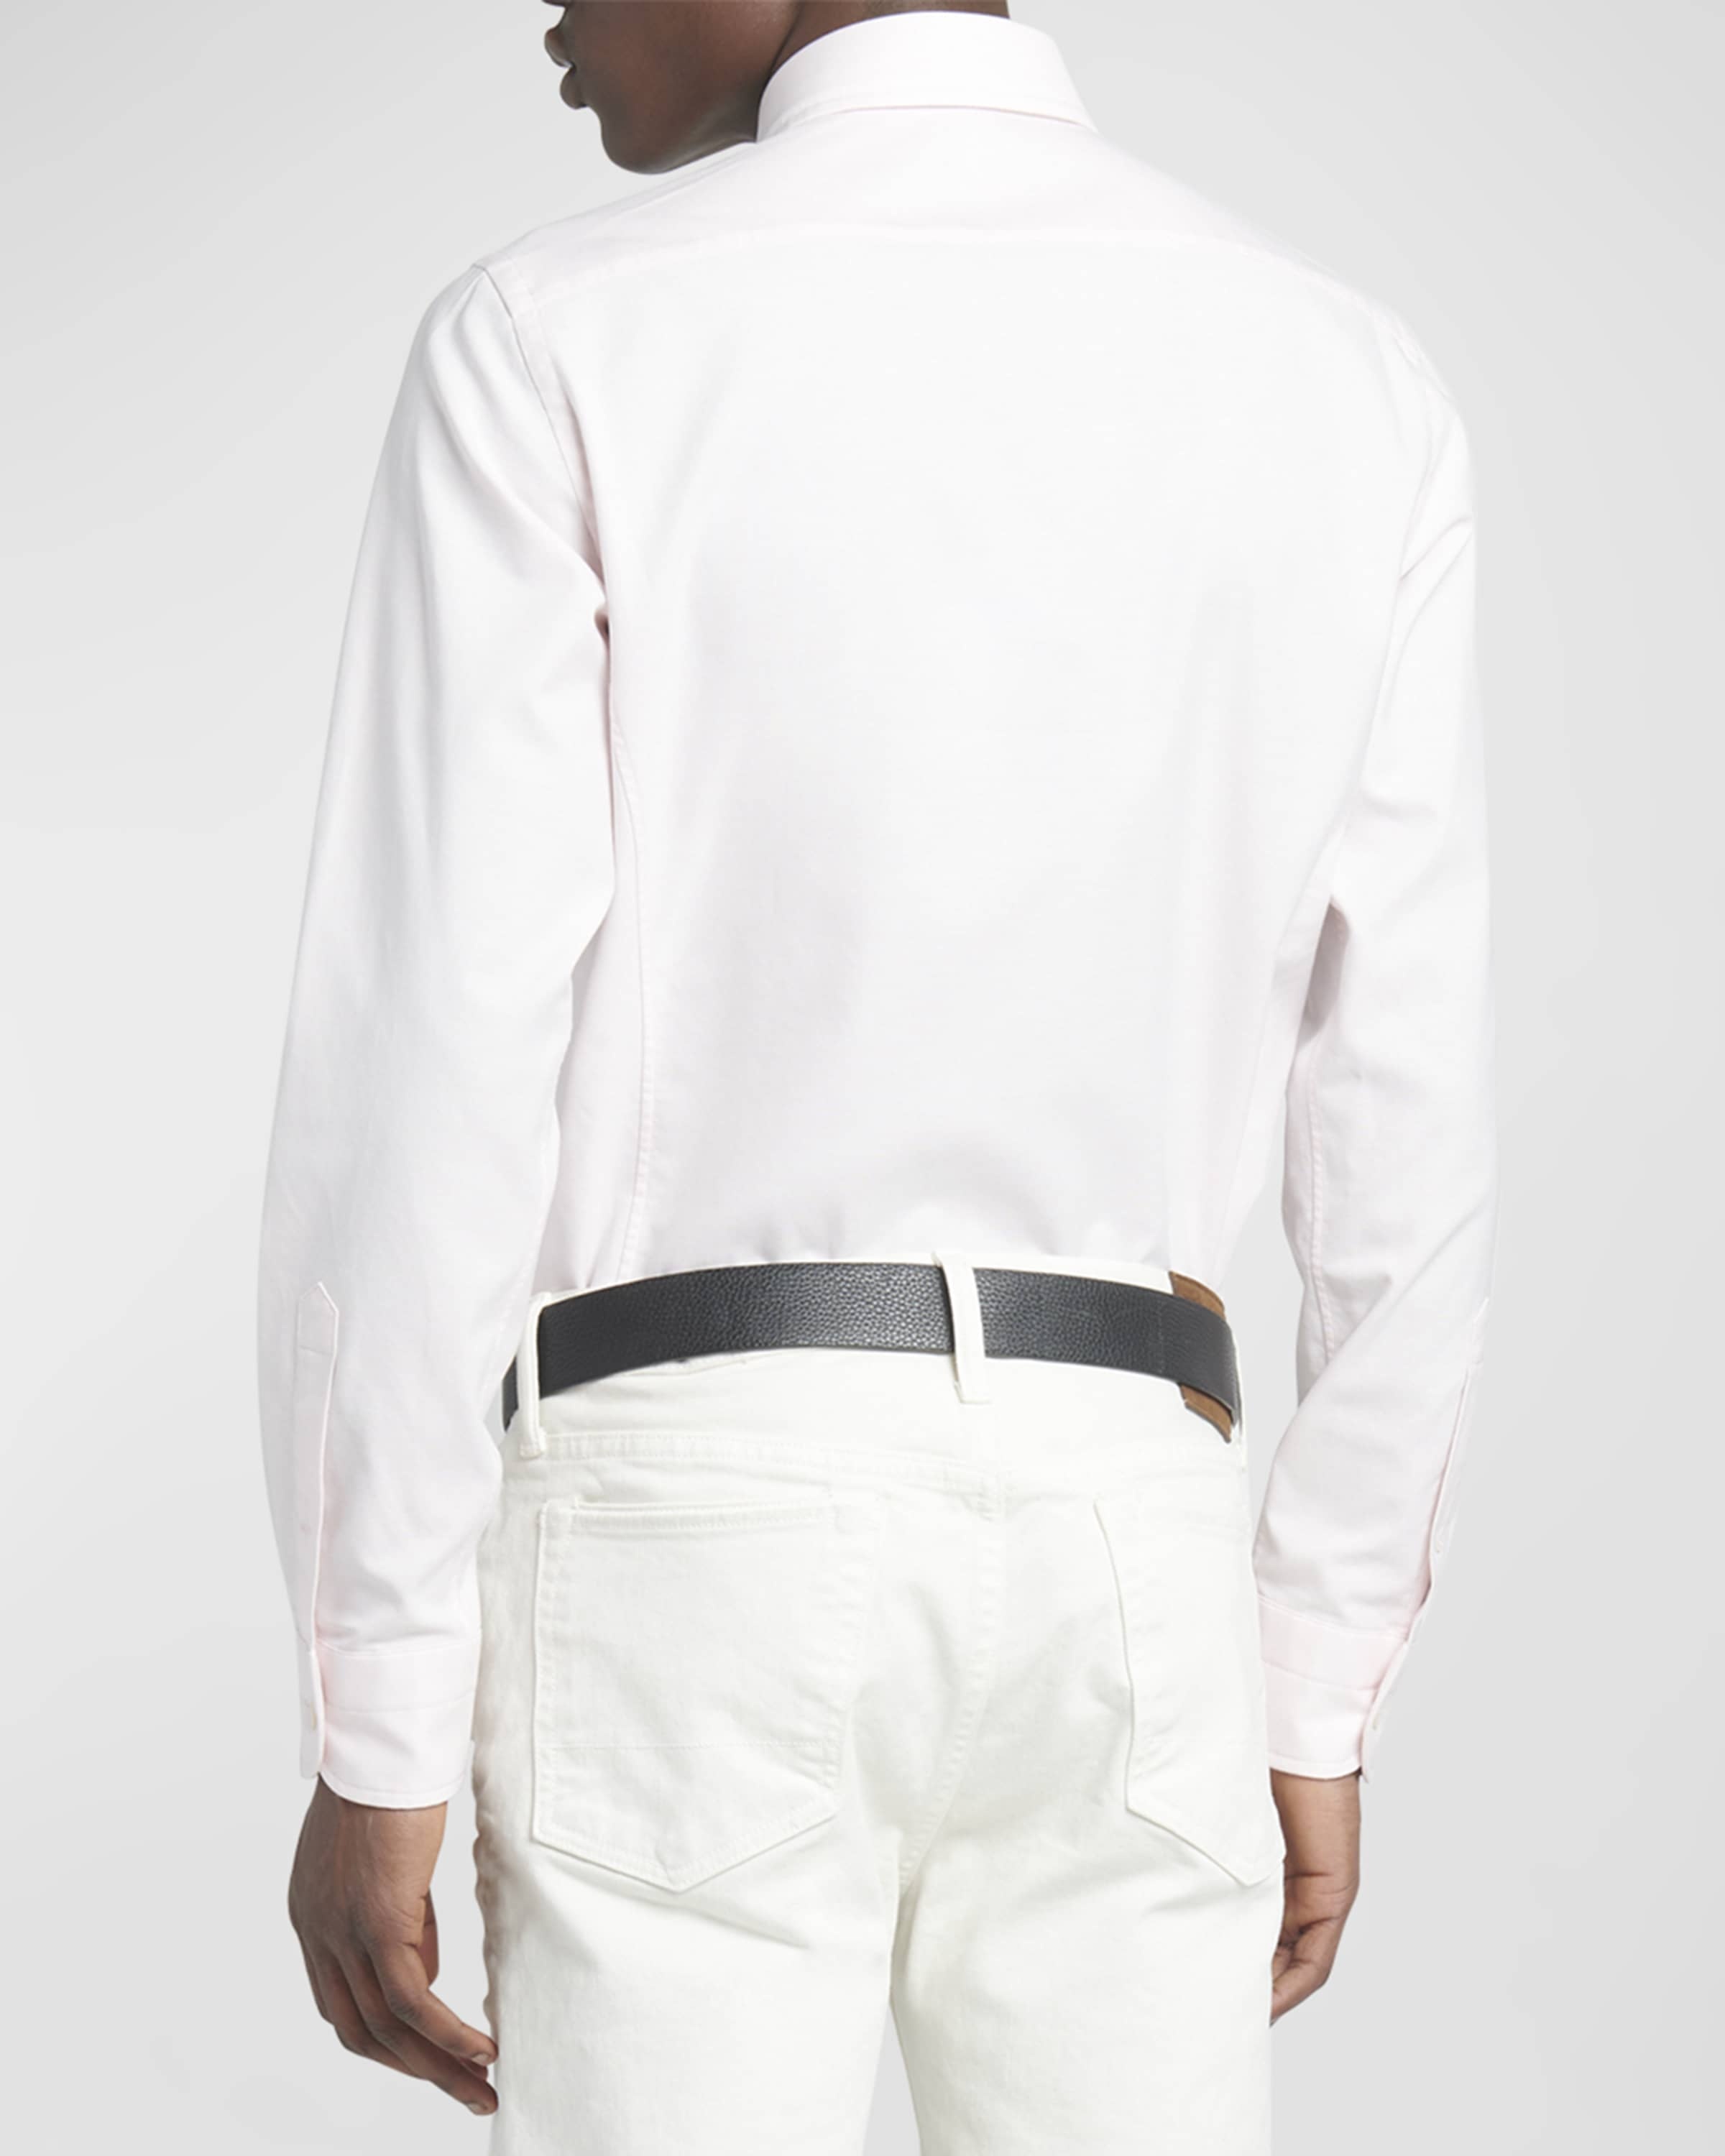 Men's Slim Fit Cotton Oxford Sport Shirt - 3